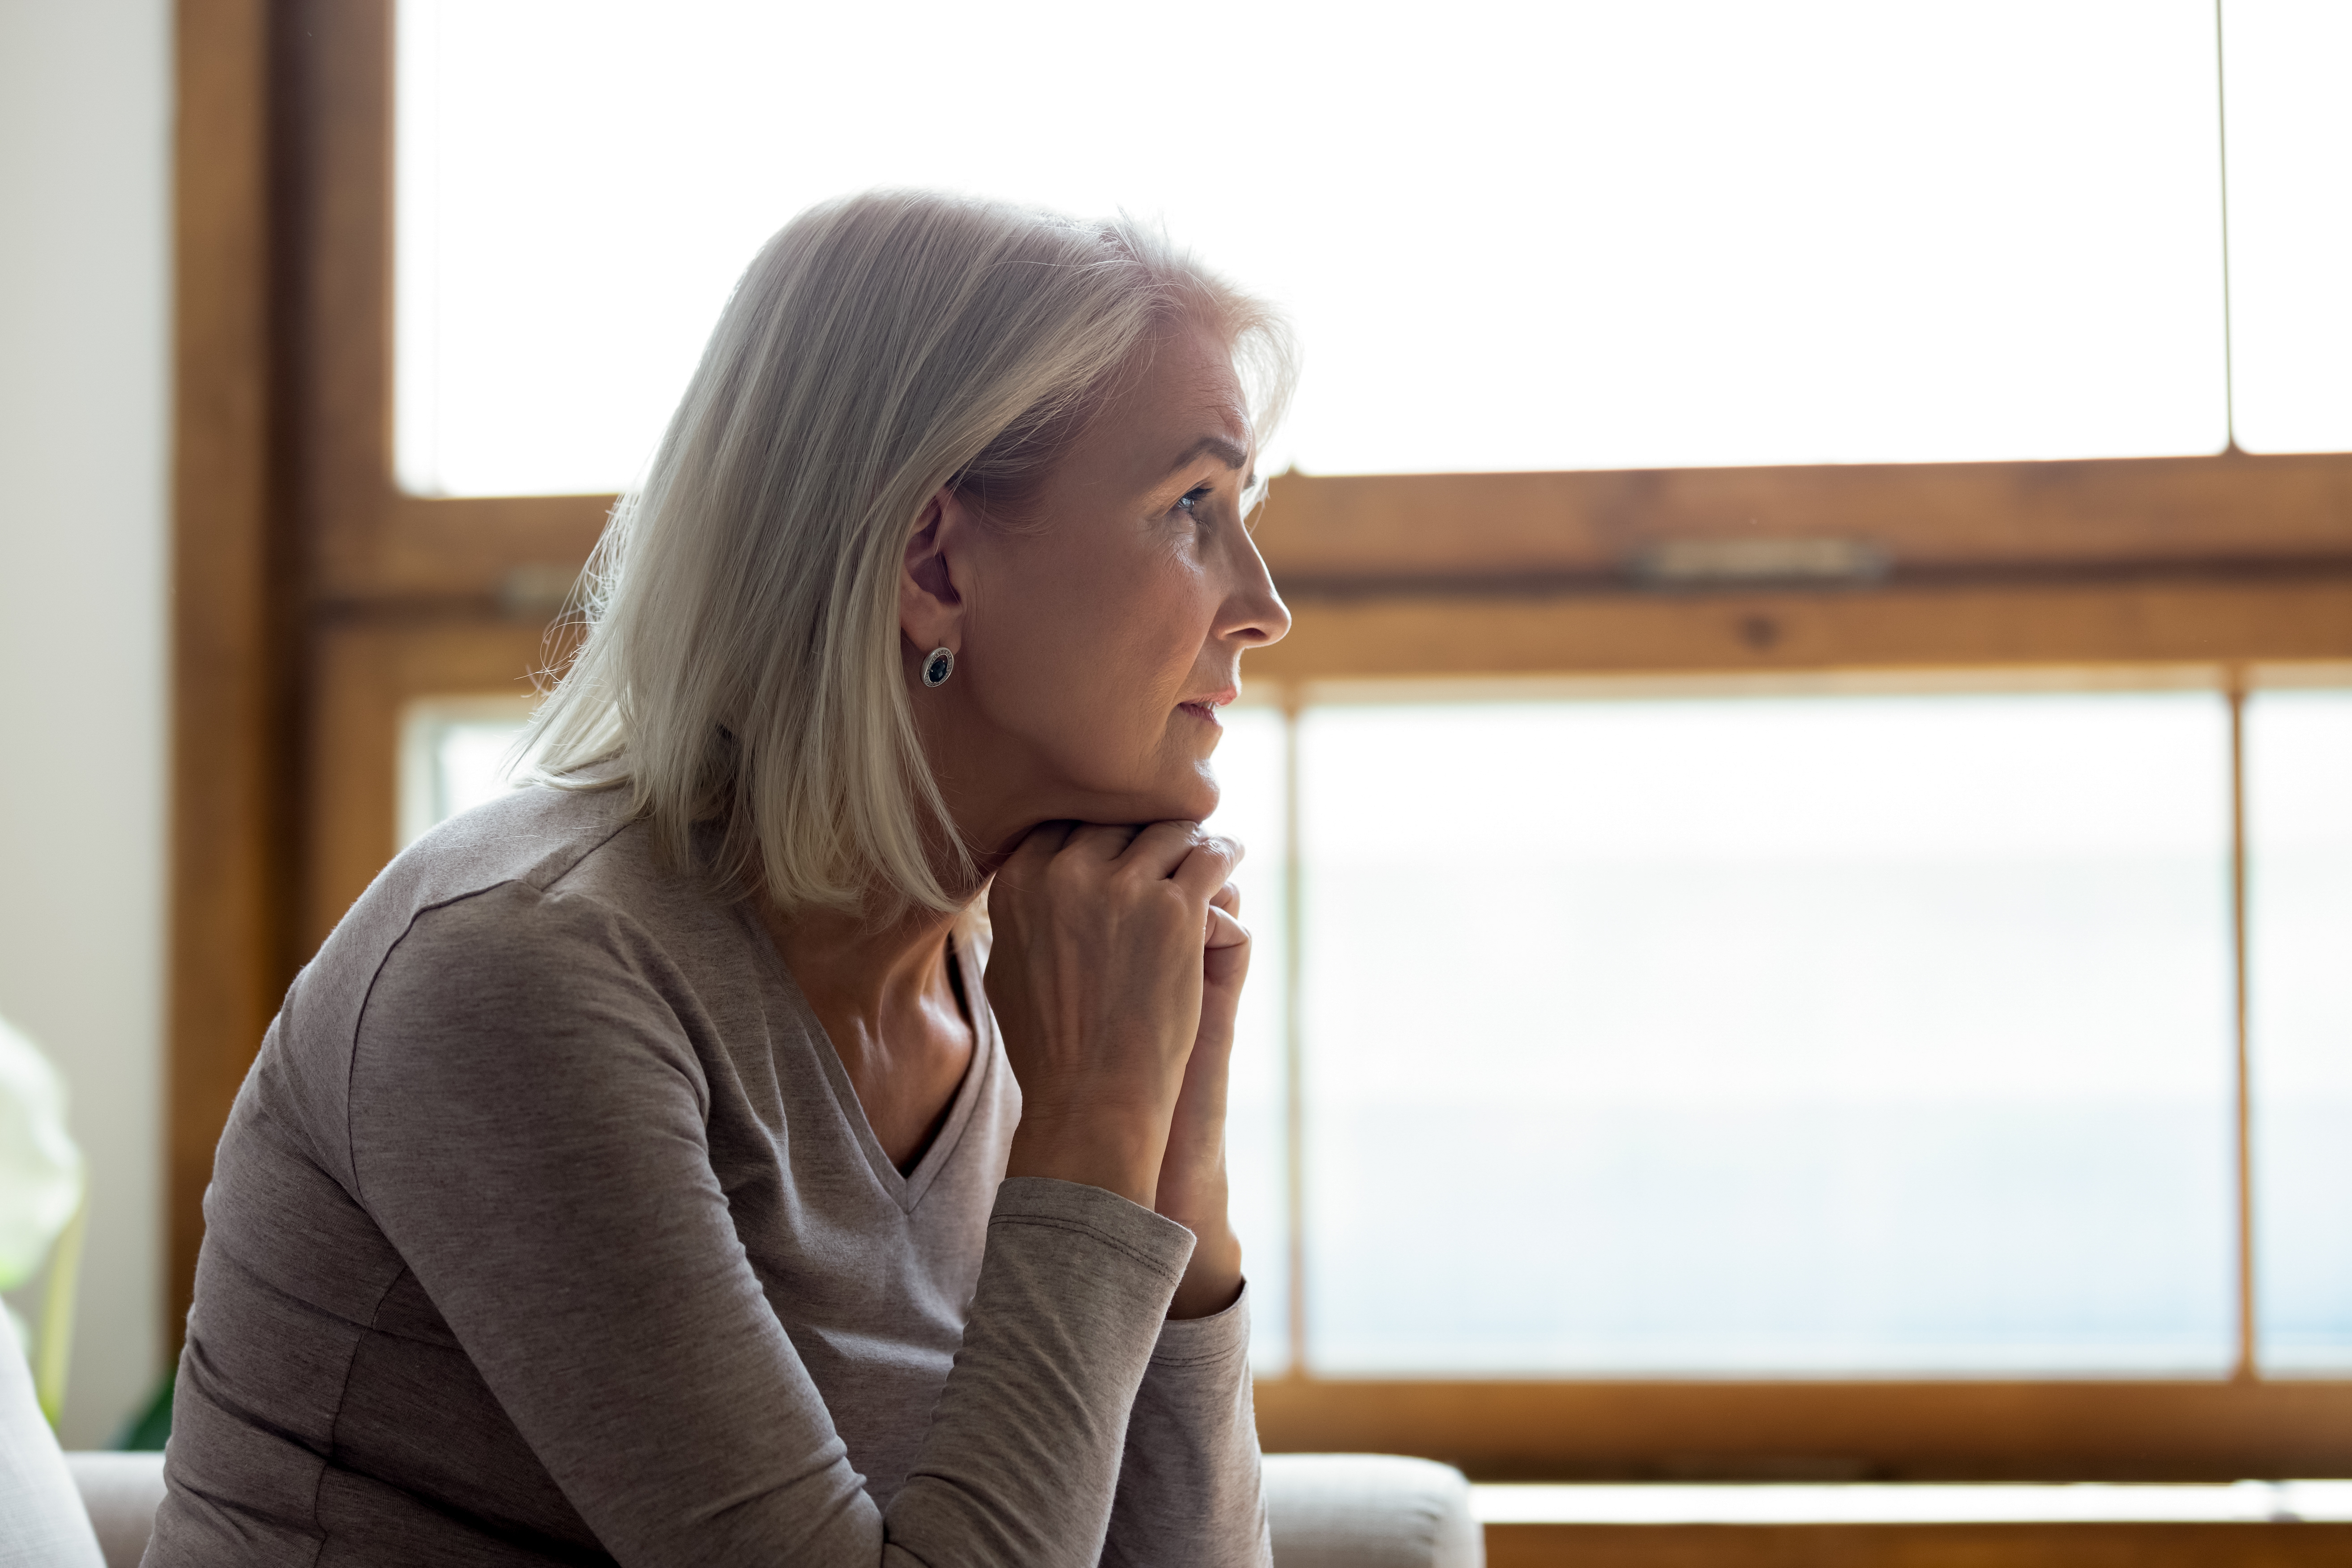 Une femme âgée déprimée qui réfléchit à un événement passé | Source : Shutterstock